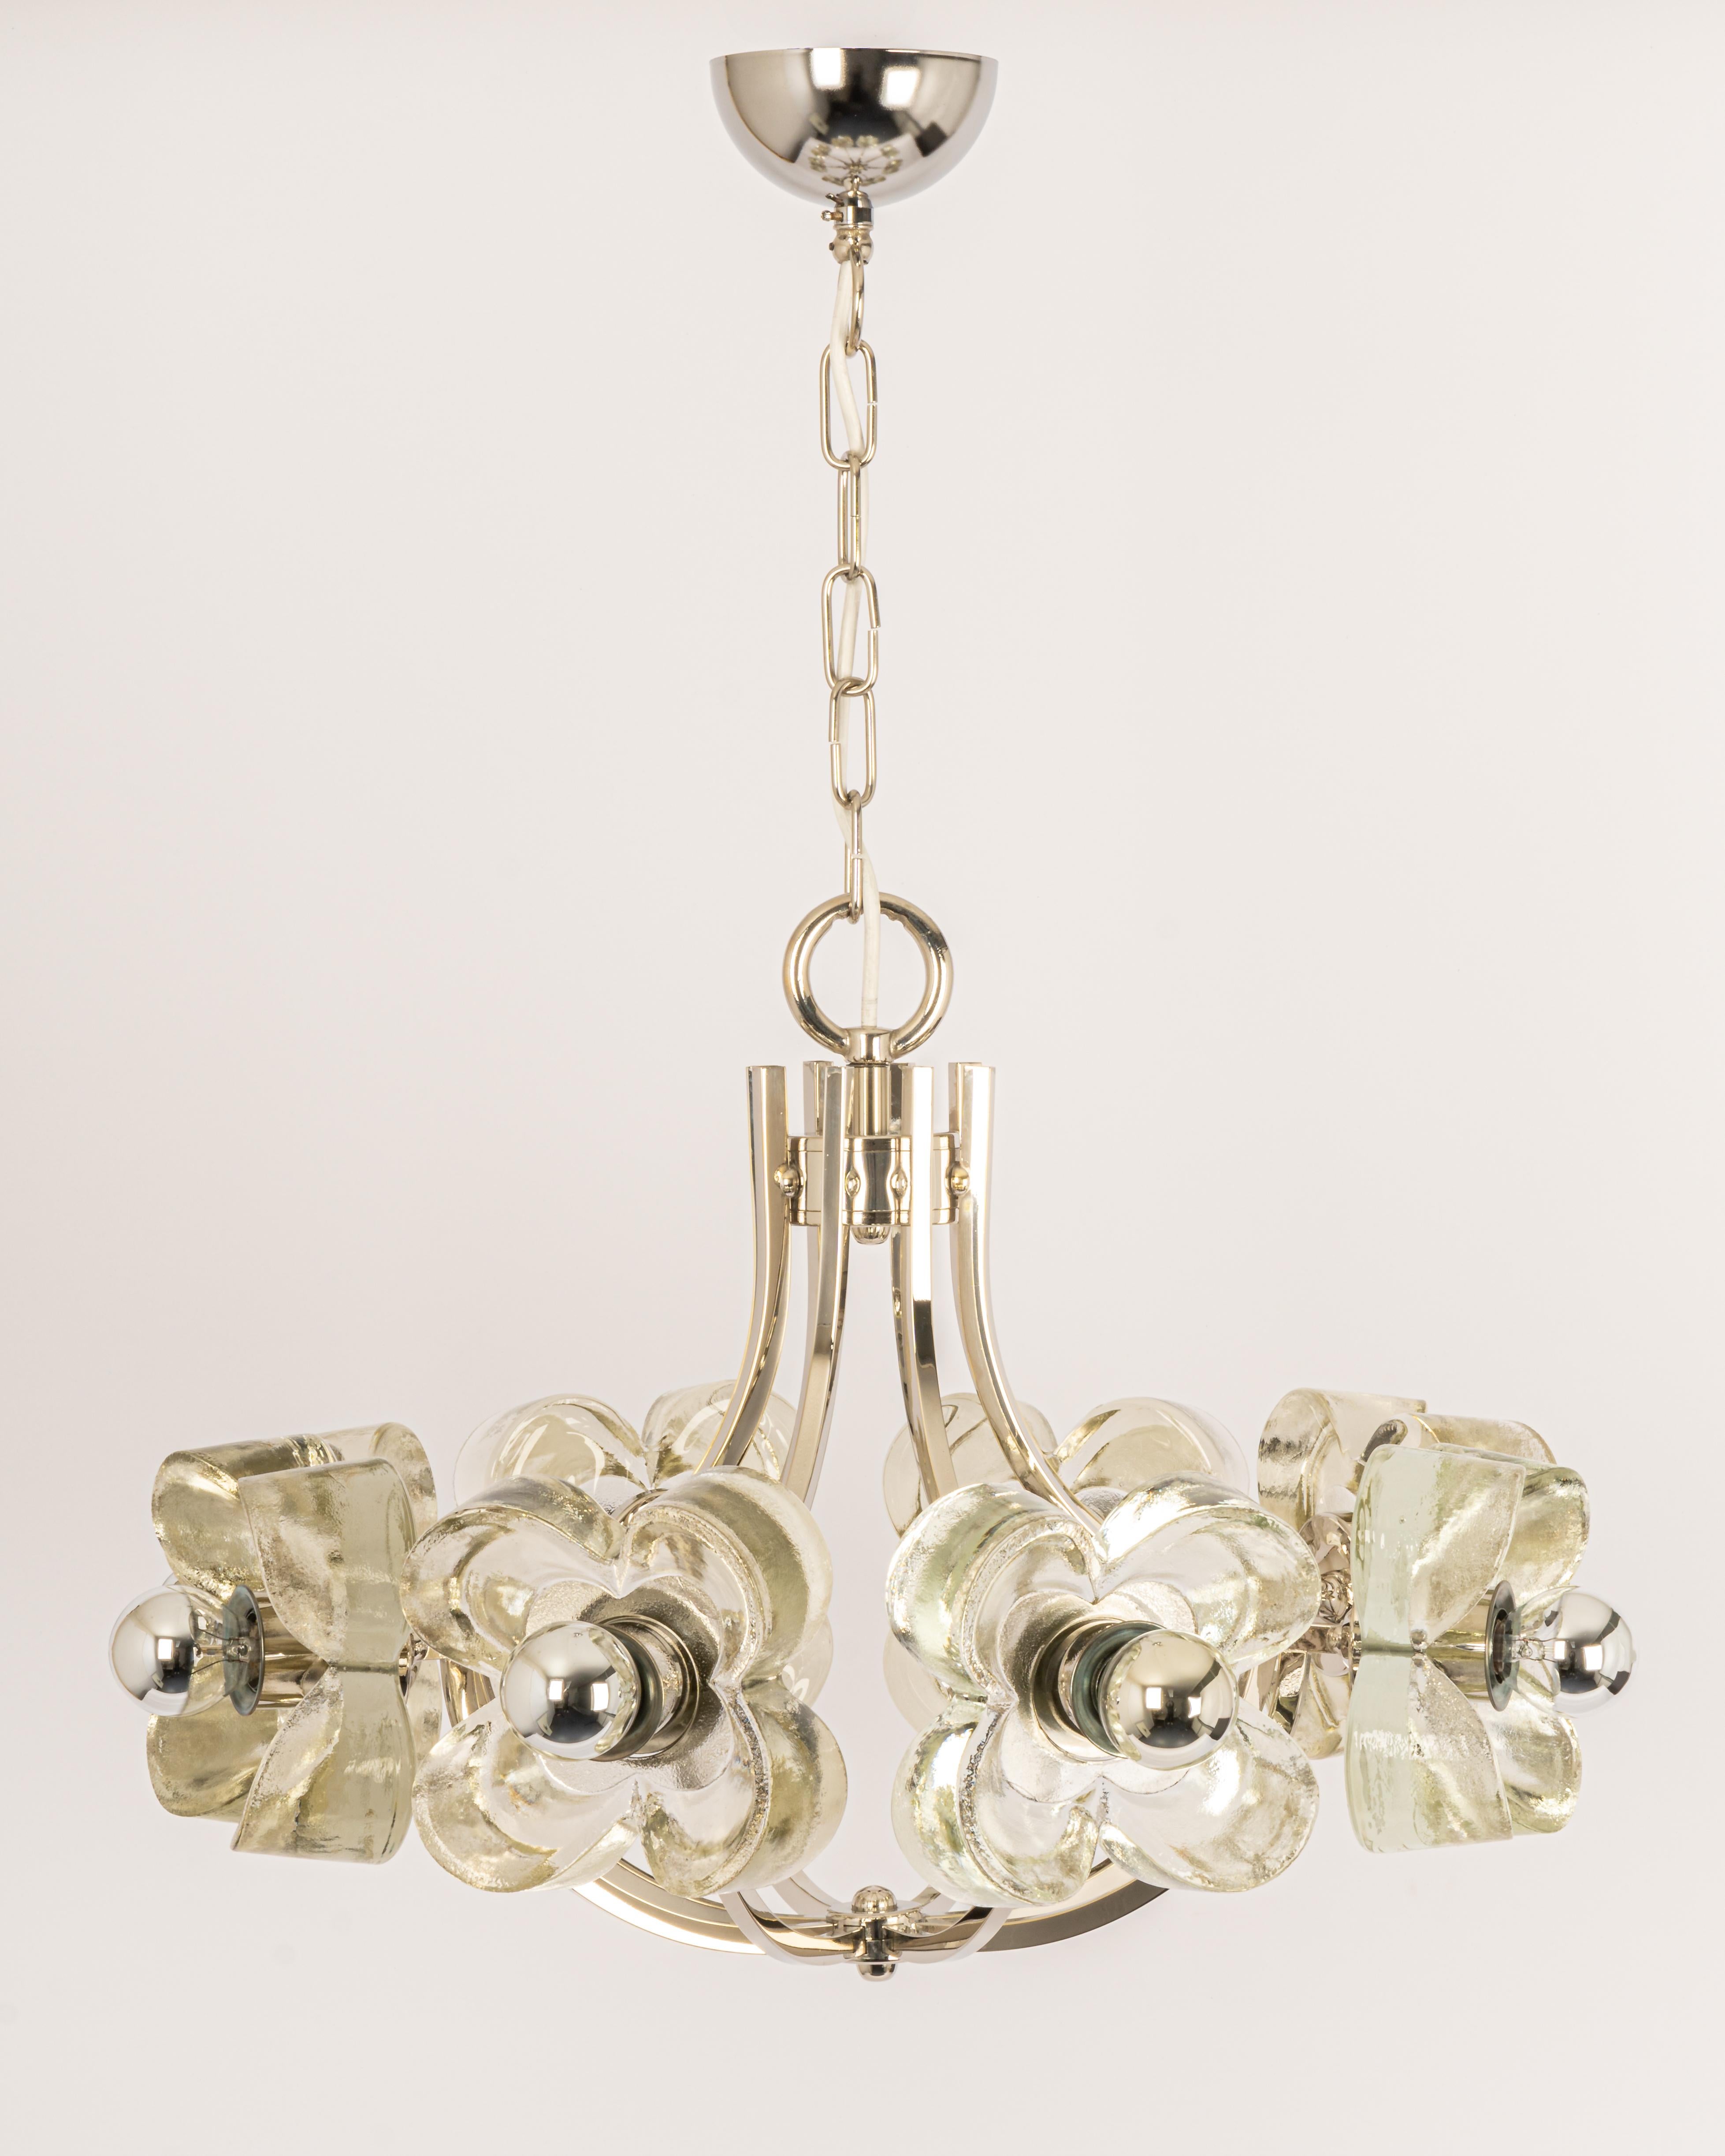 Un lustre/pendentif chromé merveilleusement grand et de haute qualité, signé Sische, Allemagne, années 1970

Il est composé d'un cadre chromé décoré de 8 verres en cristal.
La lampe accepte 8 ampoules à petit culot (max. 40W par ampoule).
Les